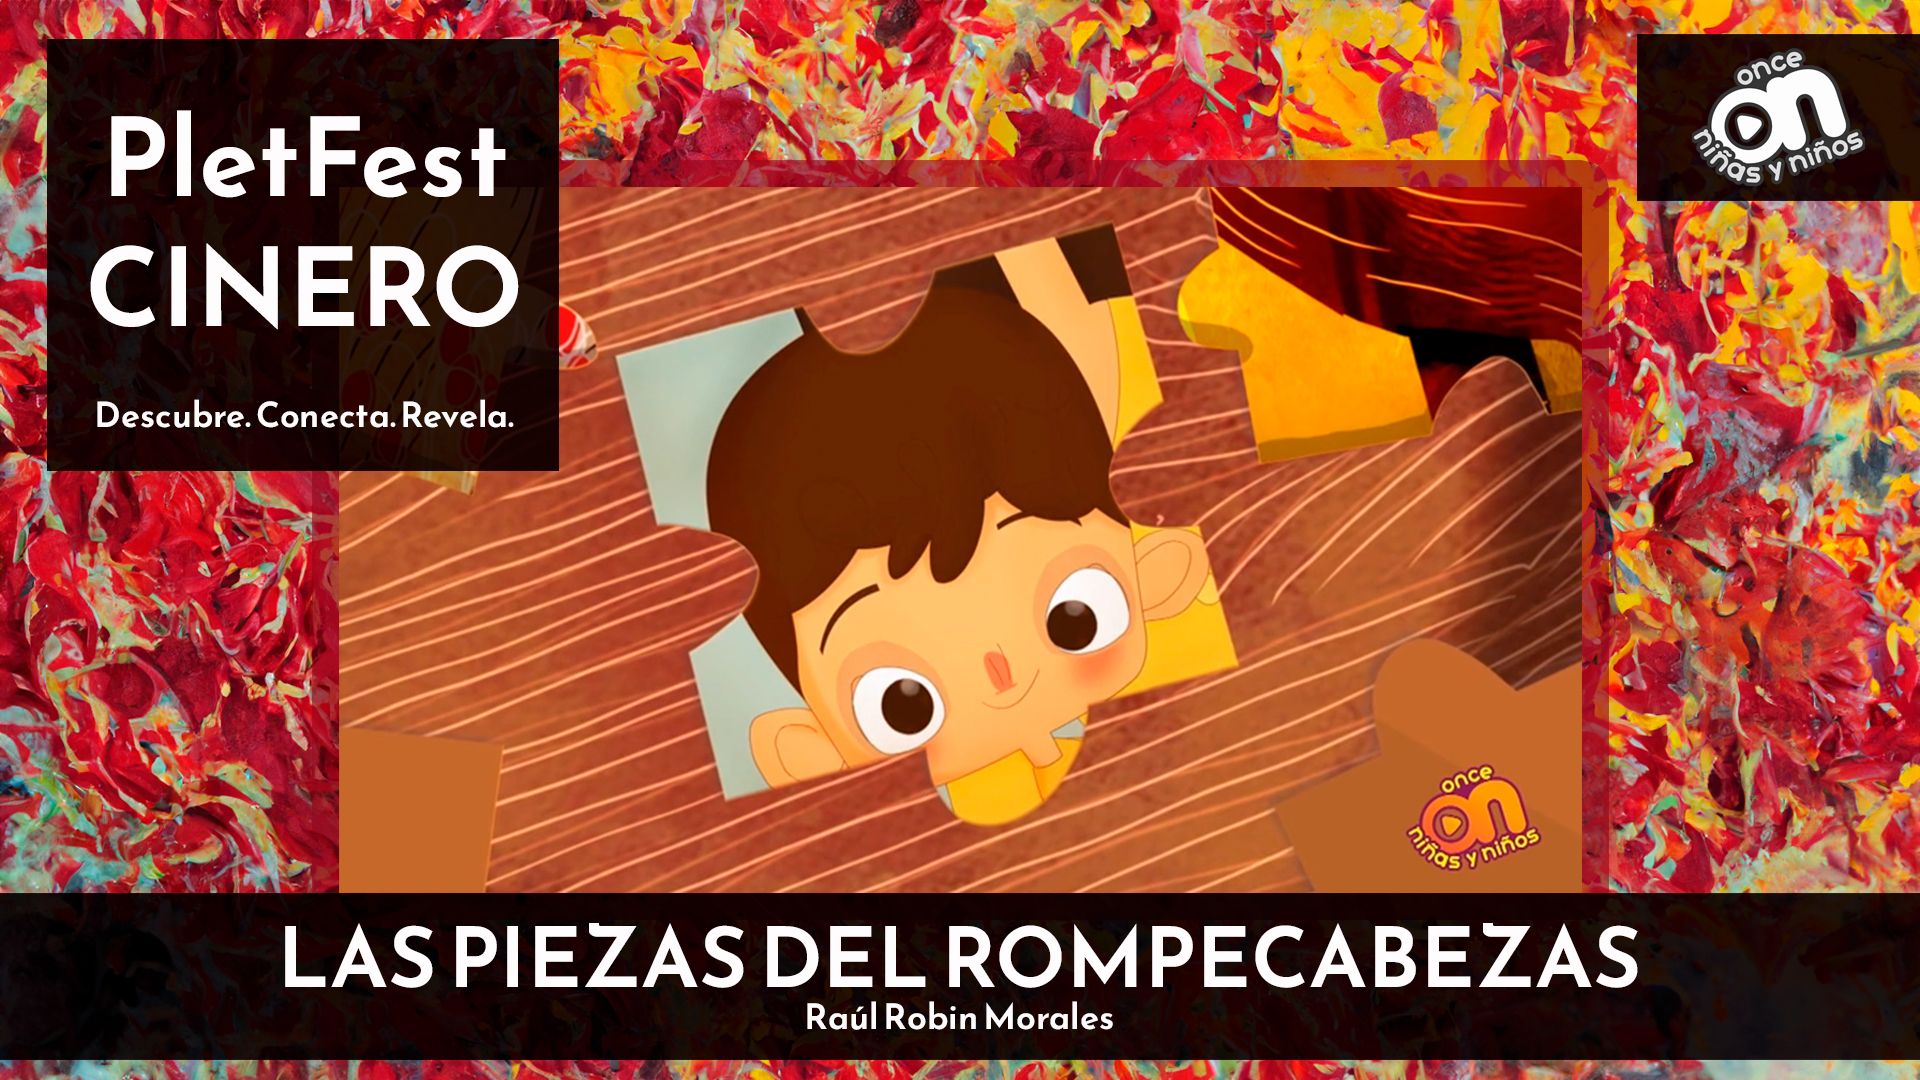 CINERO: "Las Piezas del Rompecabezas" por Canal Once Niñas y Niños